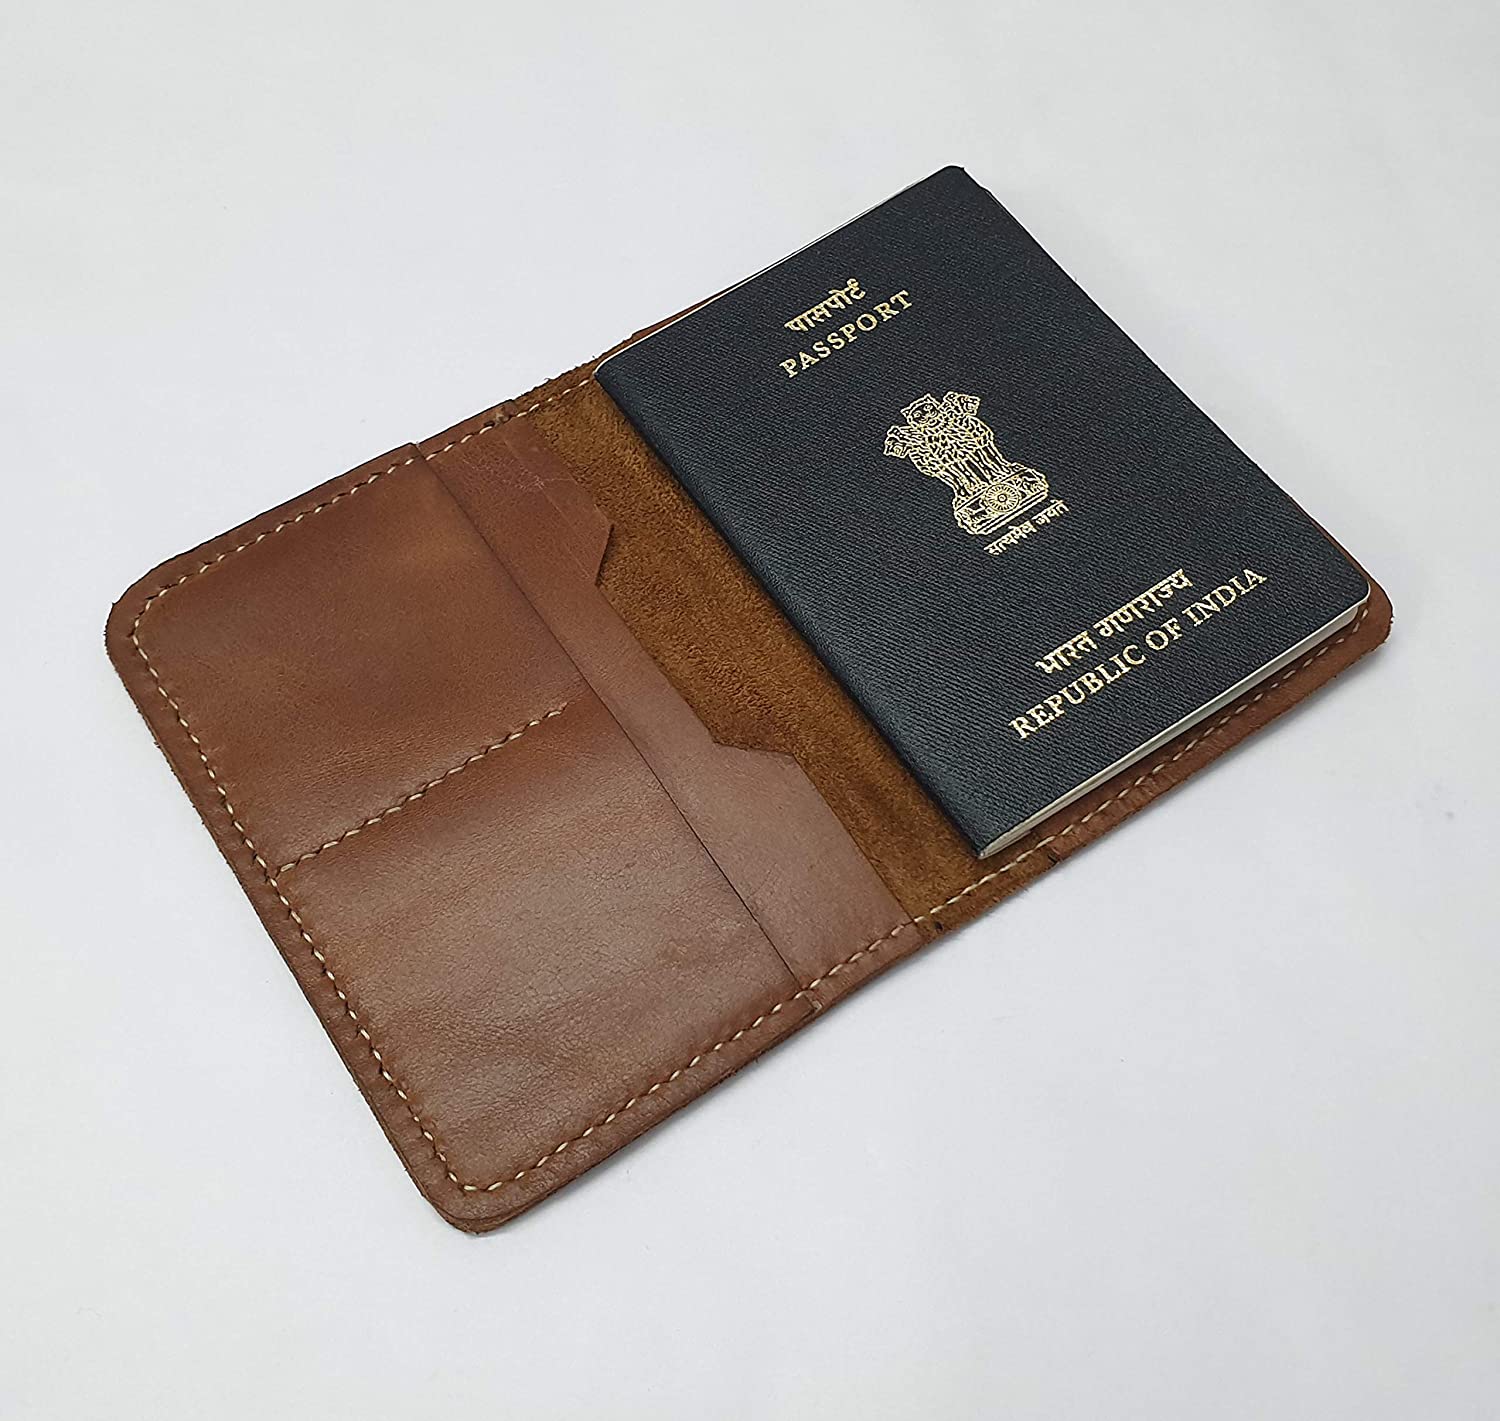 NOORA personalized wallet for men's Brown Wallet, Leather Passport Holder, Passport Wallet, Wanderlust Gift For men's -SK13